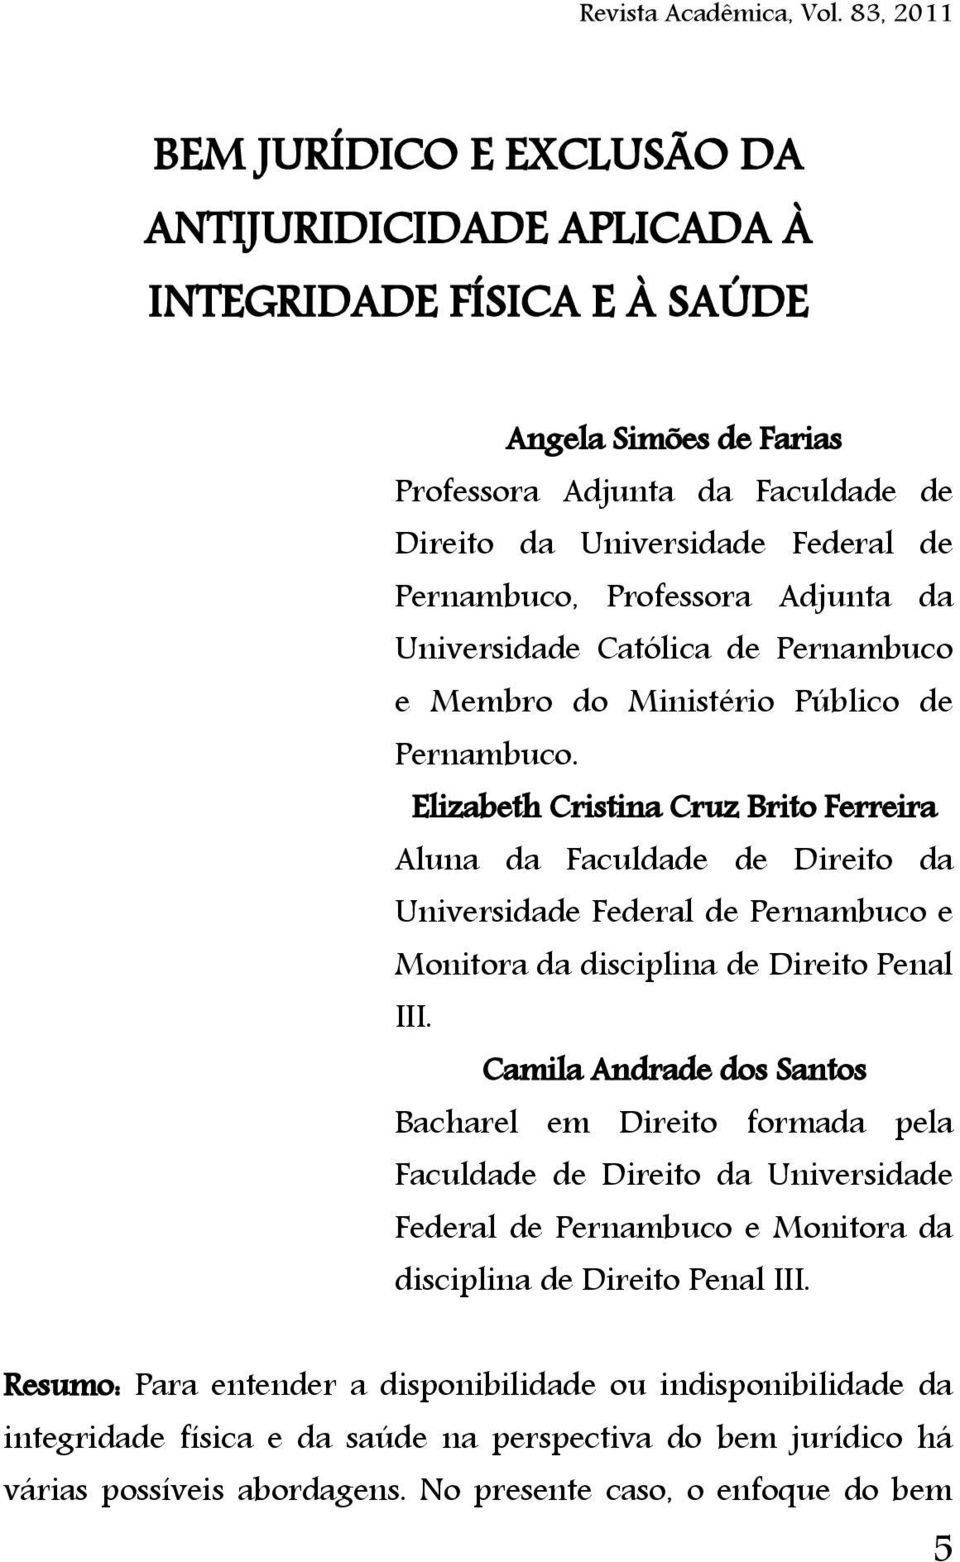 Elizabeth Cristina Cruz Brito Ferreira Aluna da Faculdade de Direito da Universidade Federal de Pernambuco e Monitora da disciplina de Direito Penal III.